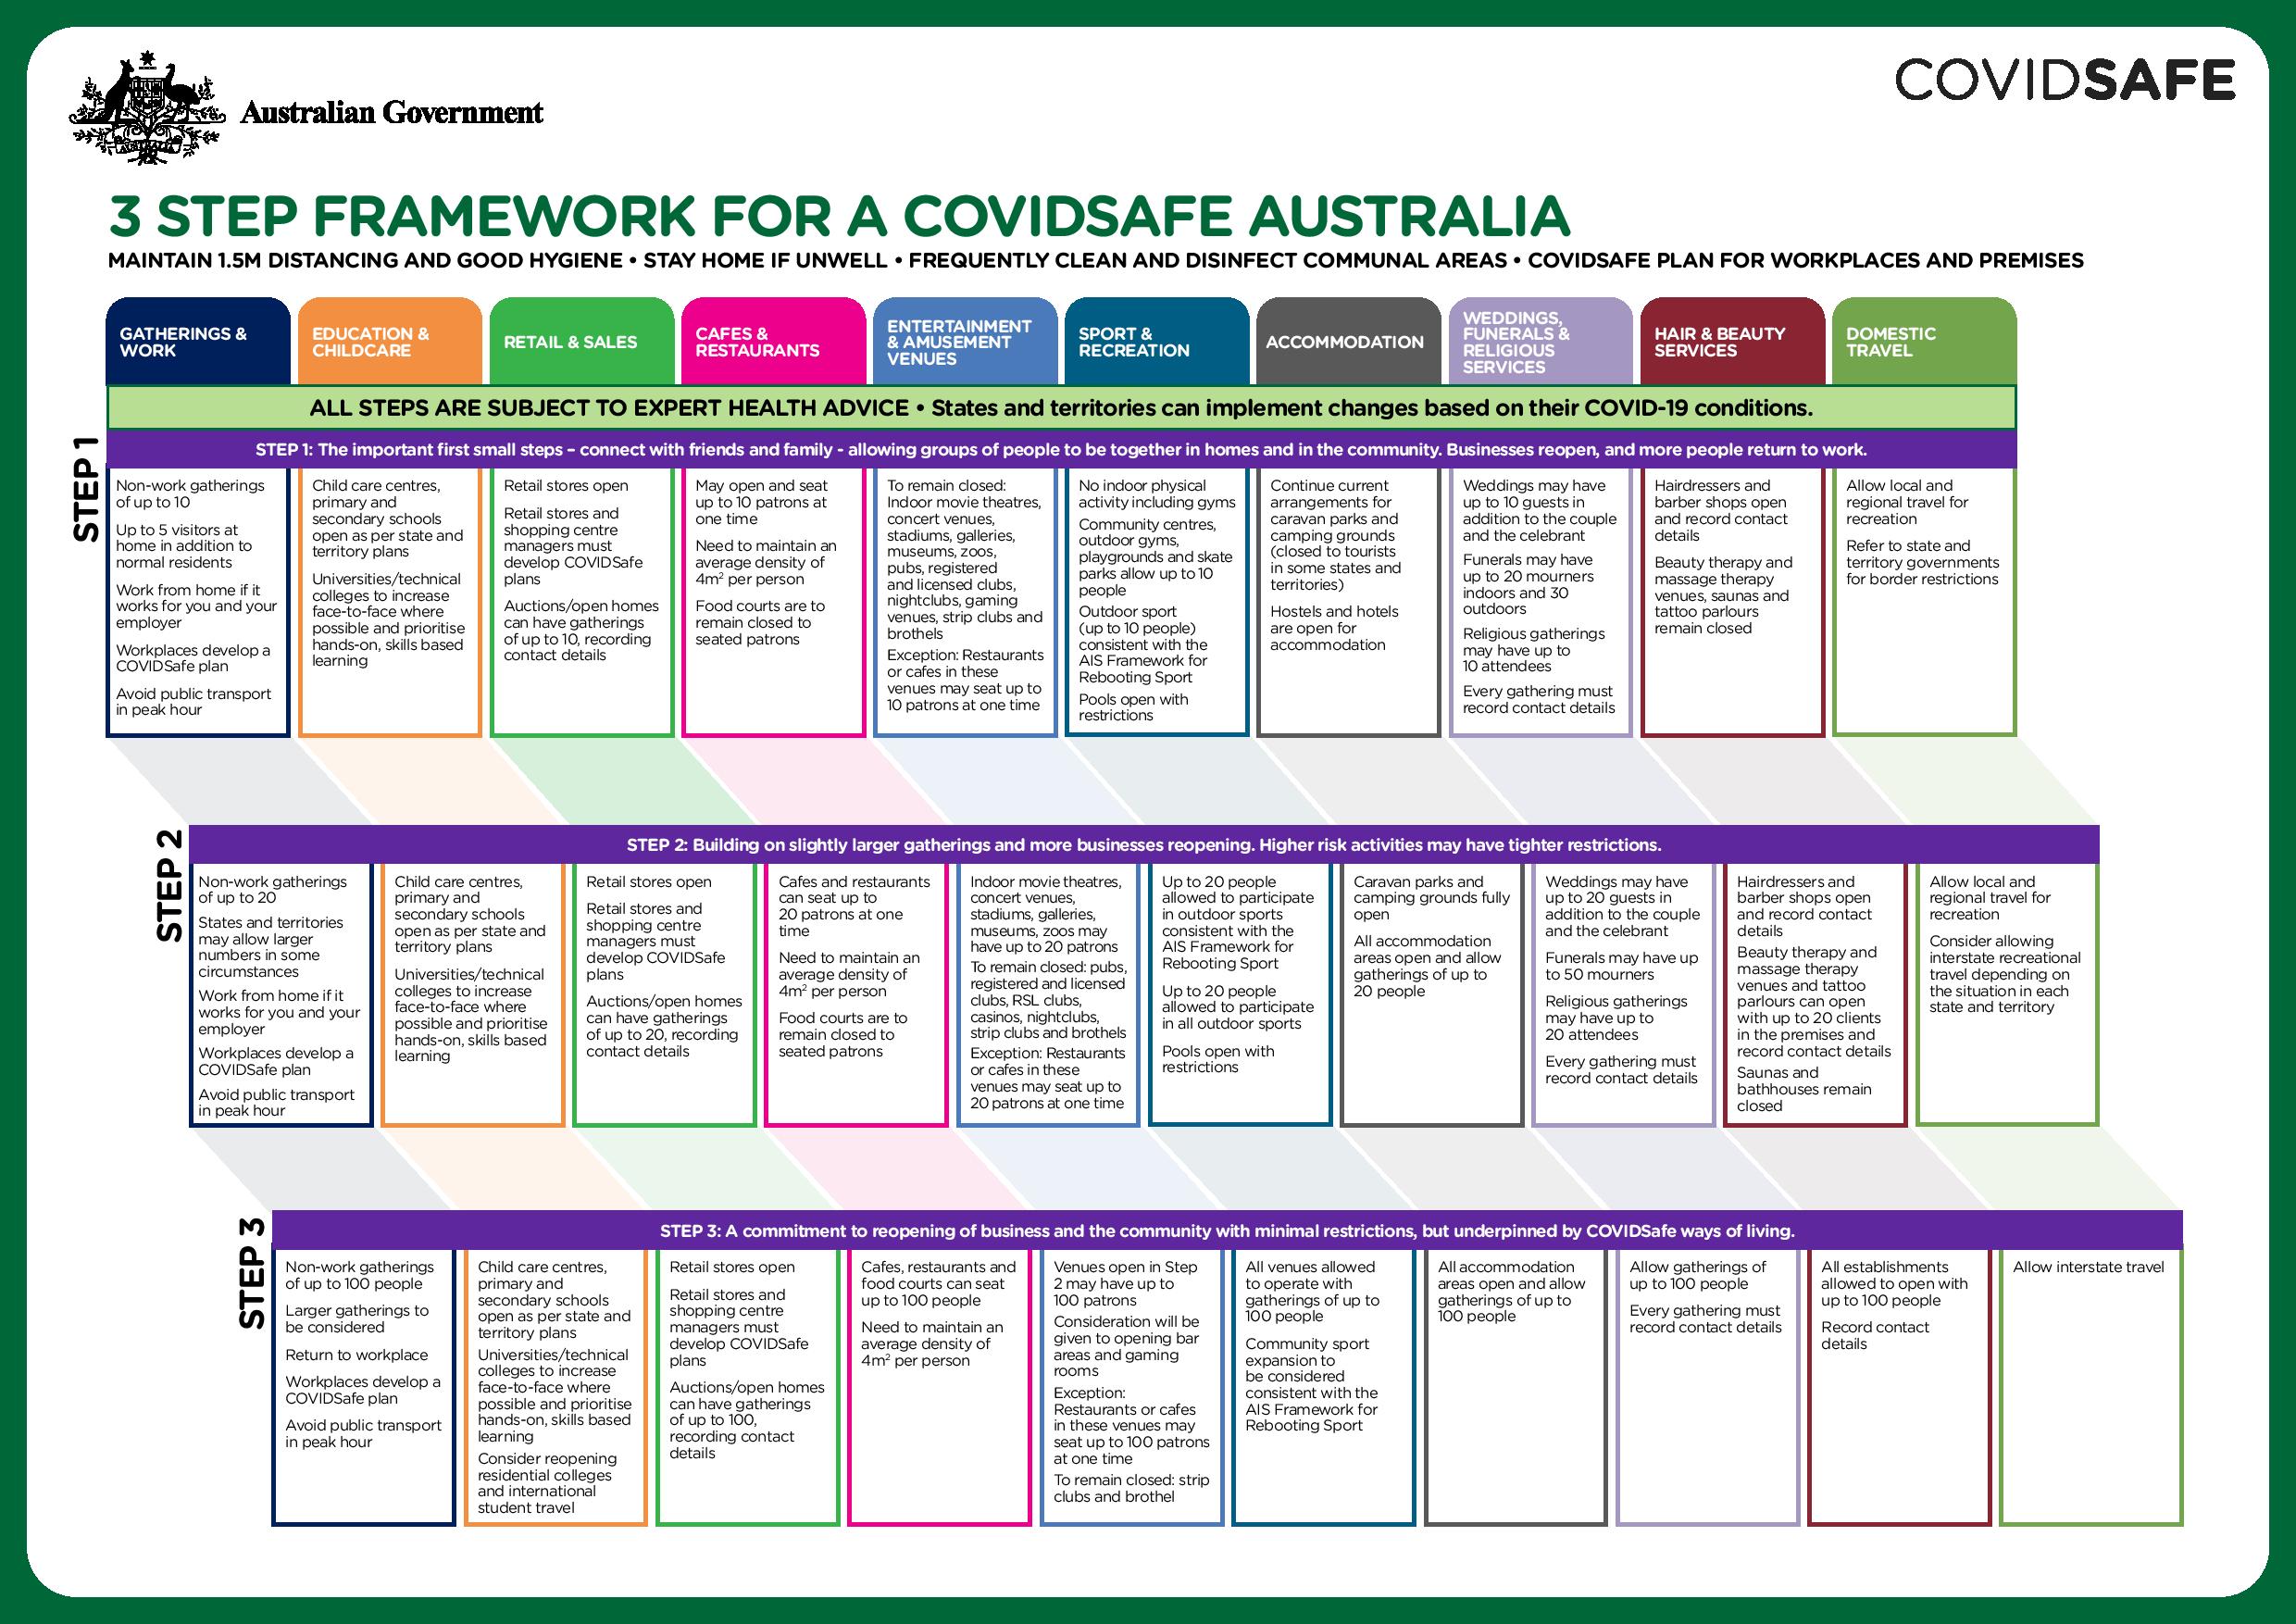 3 STEP FRAMEWORK FOR COVIDSAFE AUSTRALIA